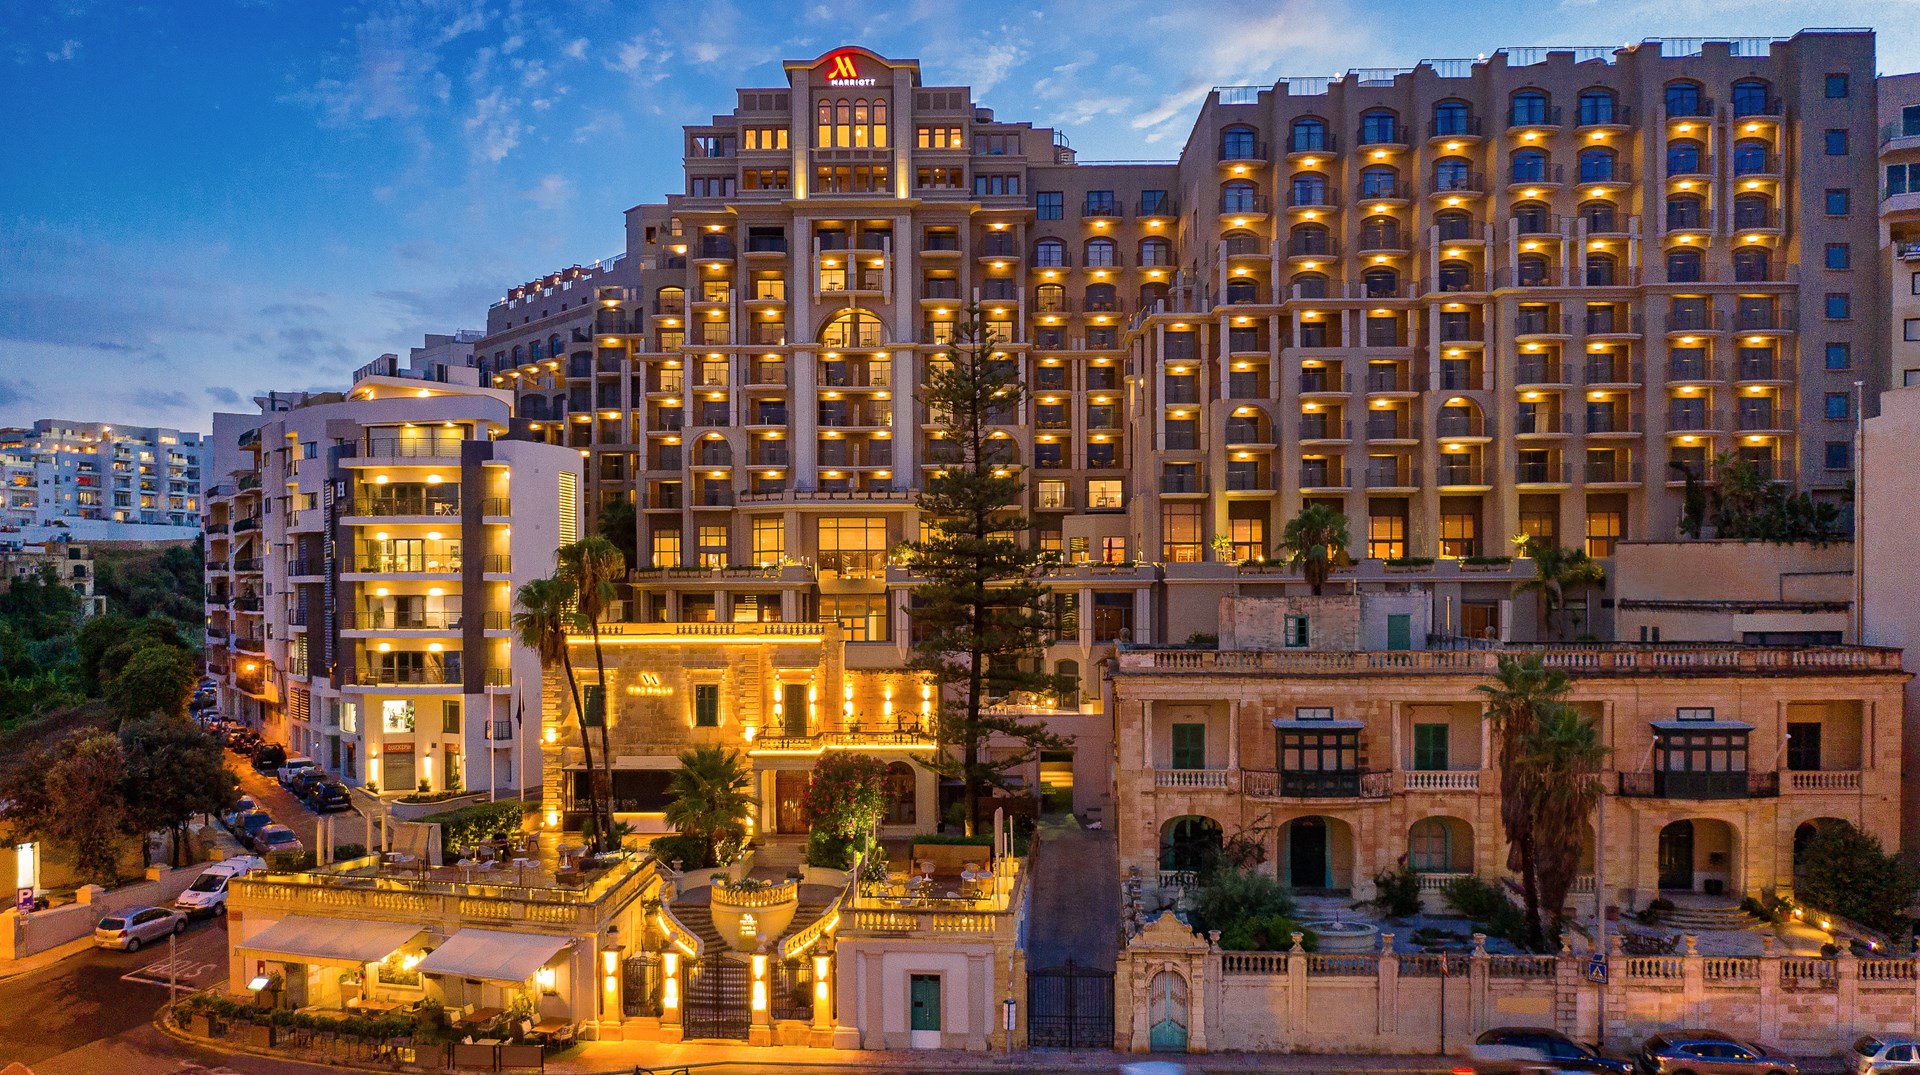 Schitterend 5-sterren resort aan de sfeervolle promenade van St. Julian's  Malta Marriott Resort & Spa